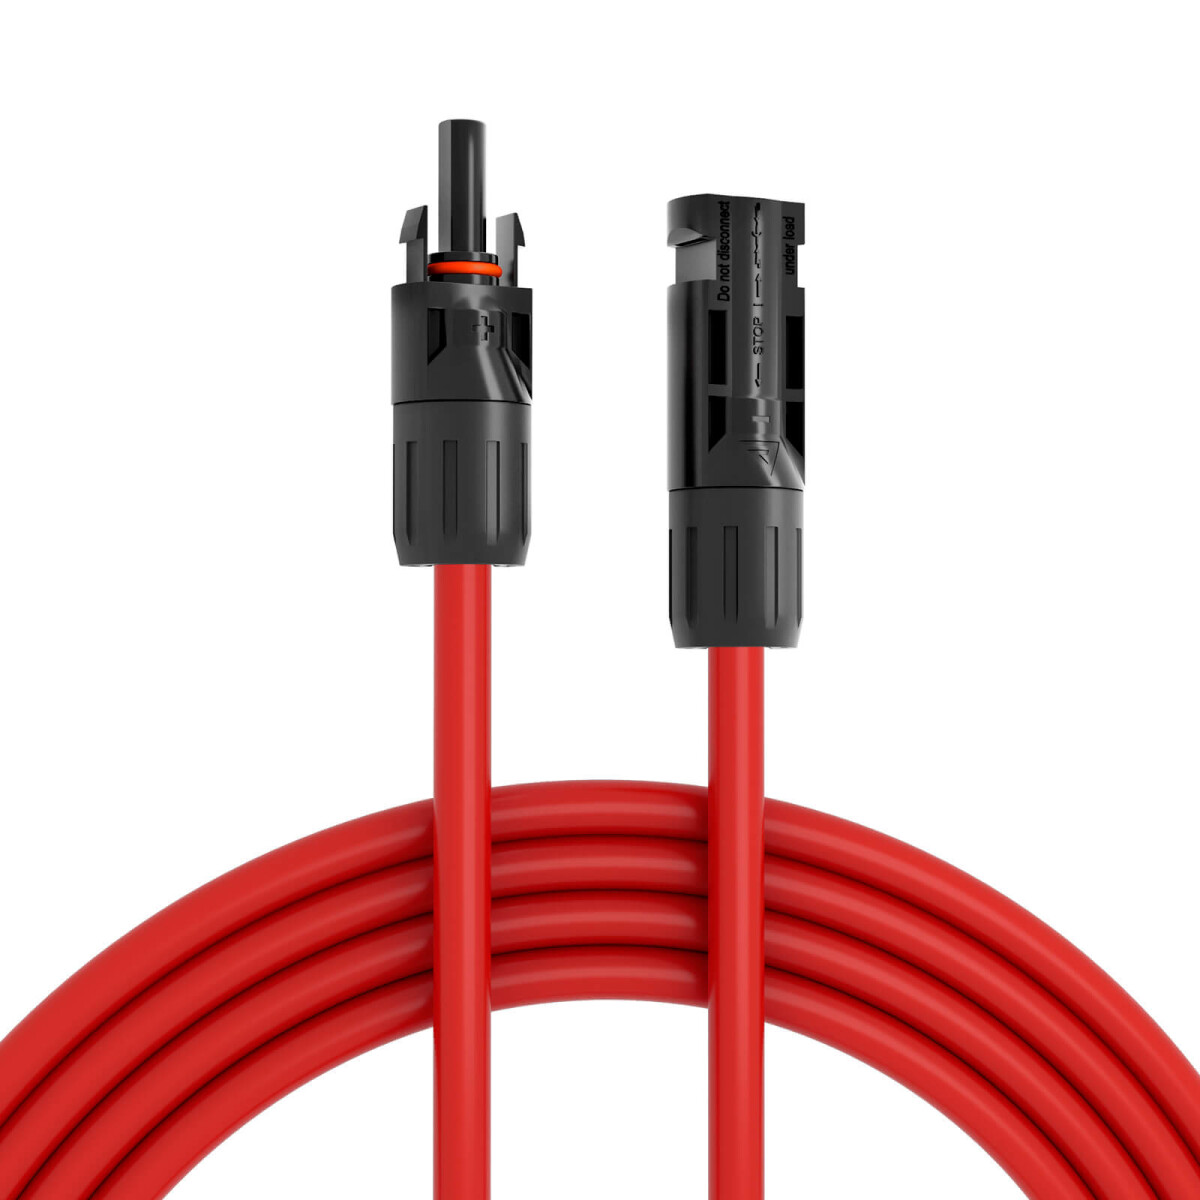 Kabel/Leitung 2-adrig 1,5 mm² verzinnte Litzenleitung rot/schwarz, 1,75 €